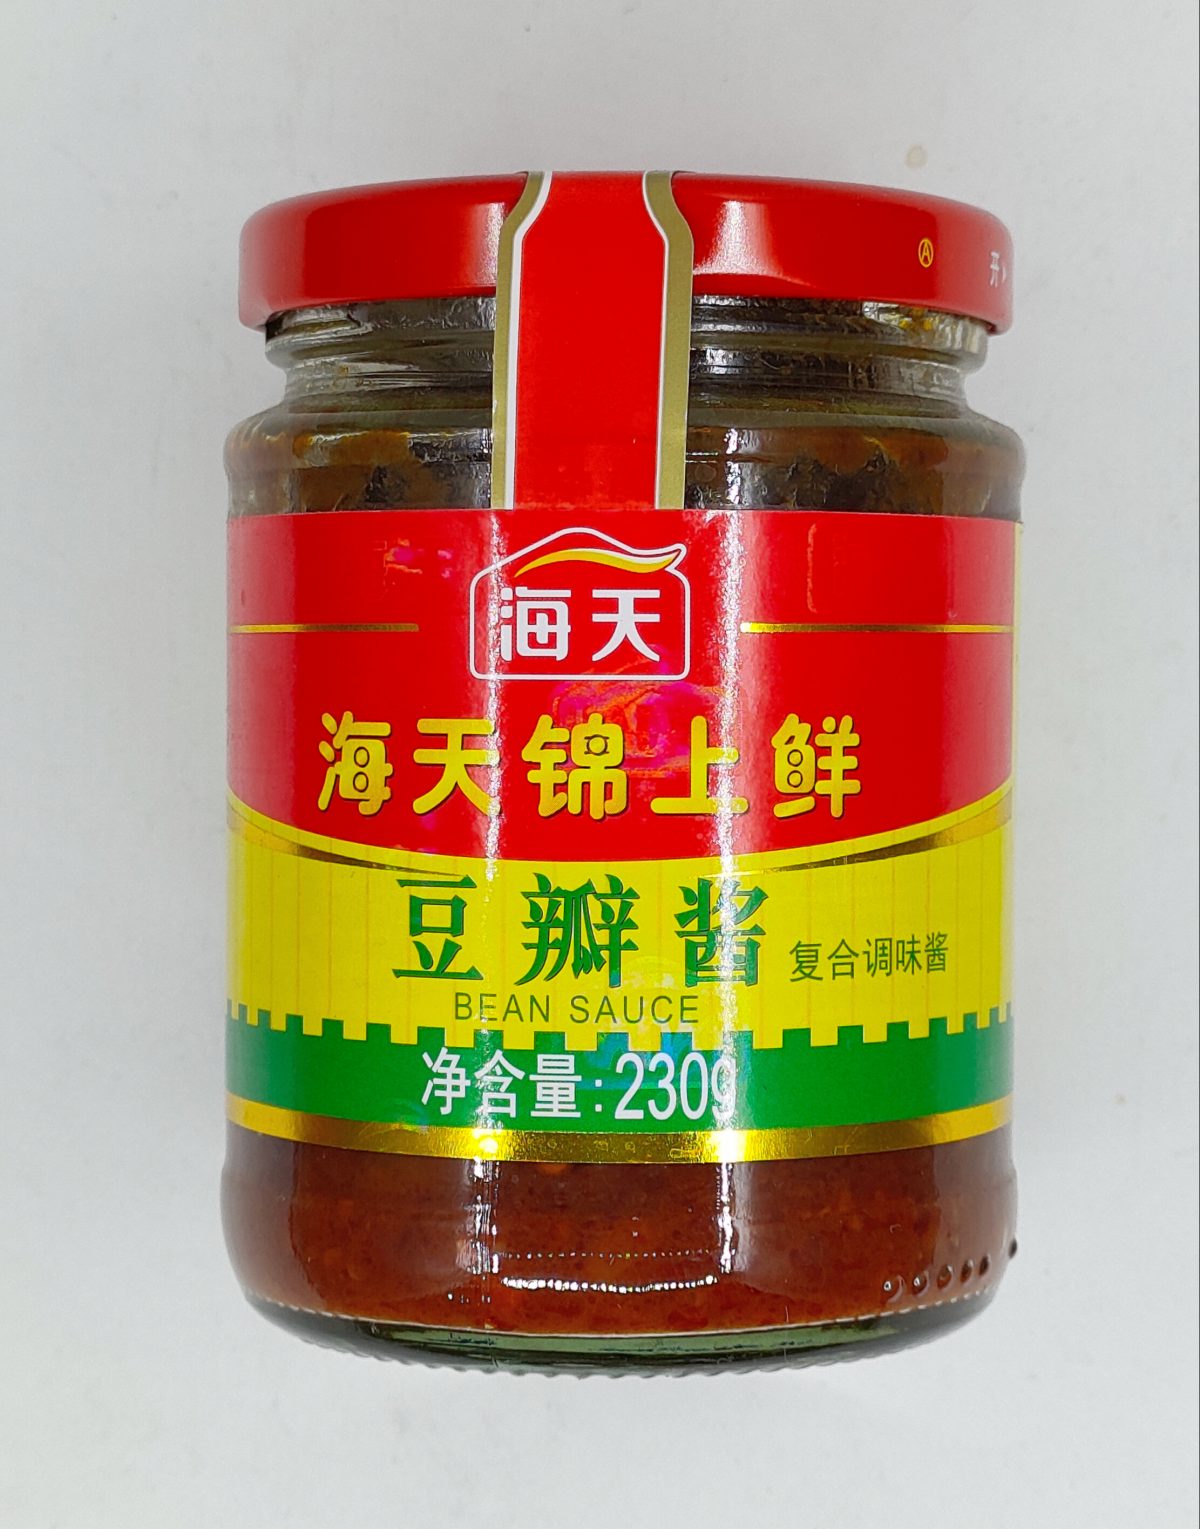 海天黄豆酱800g | Yue Hwa Chinese Products